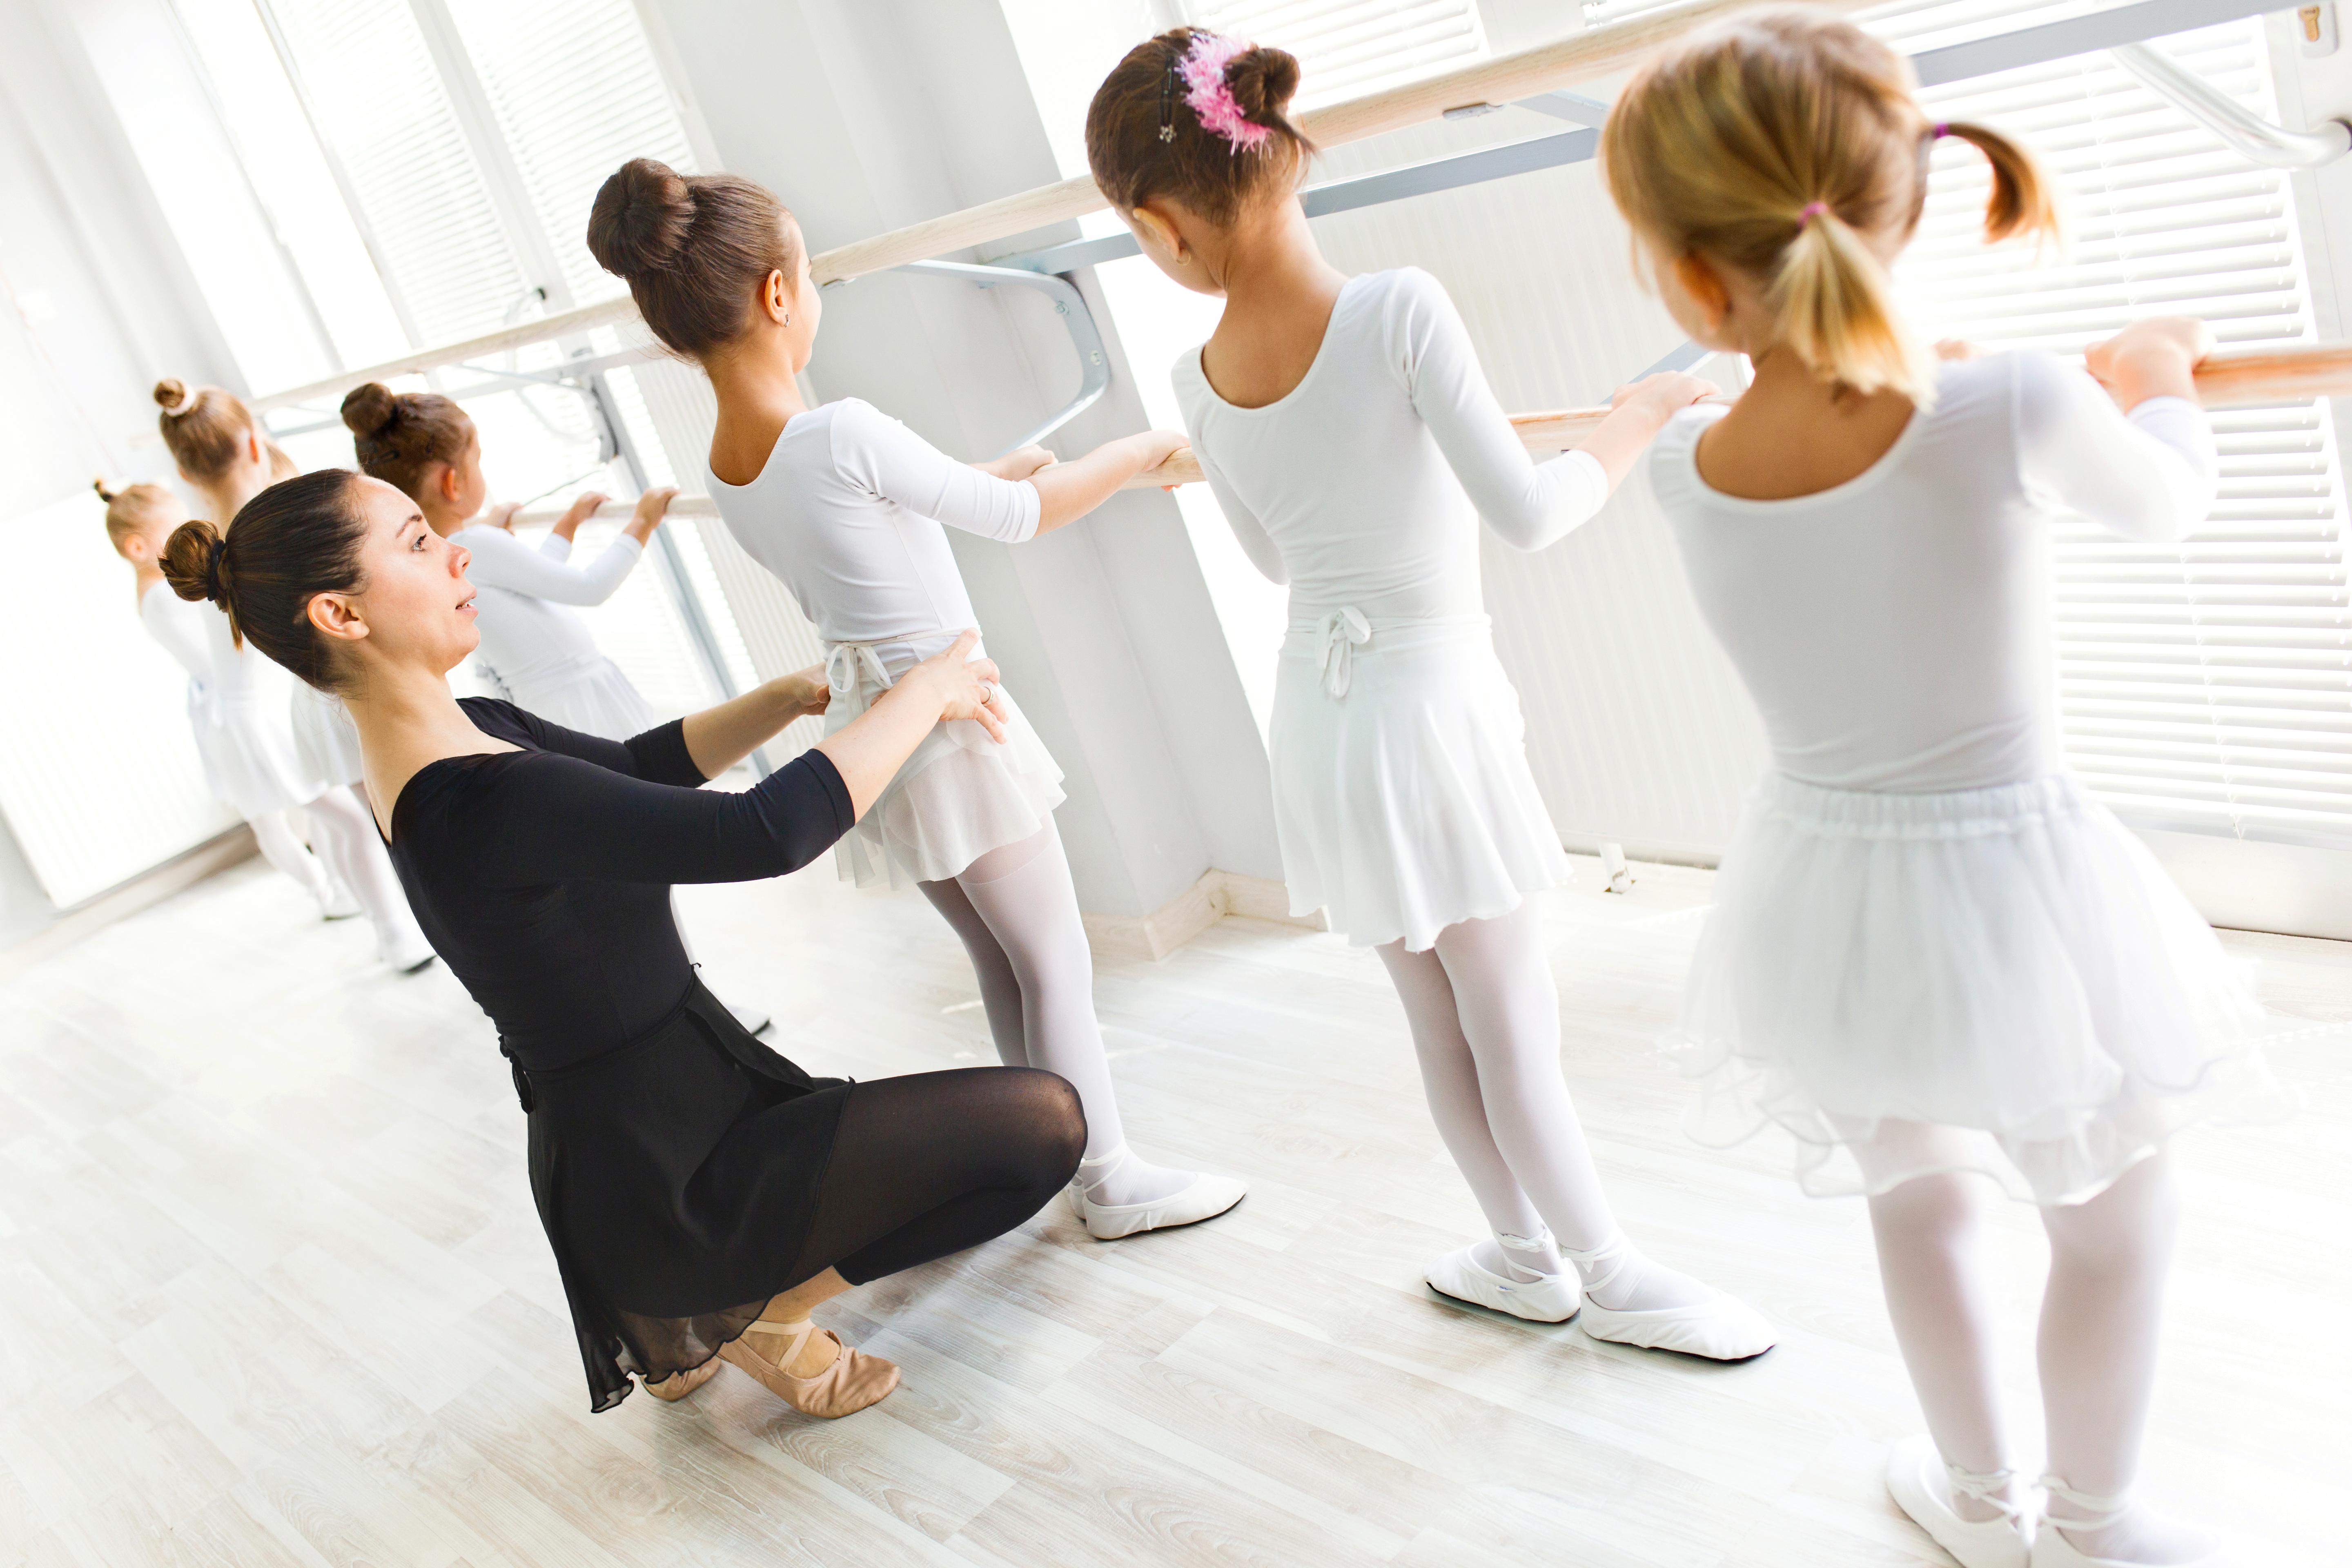 Ballet teacher helping girls with postures during ballet class.